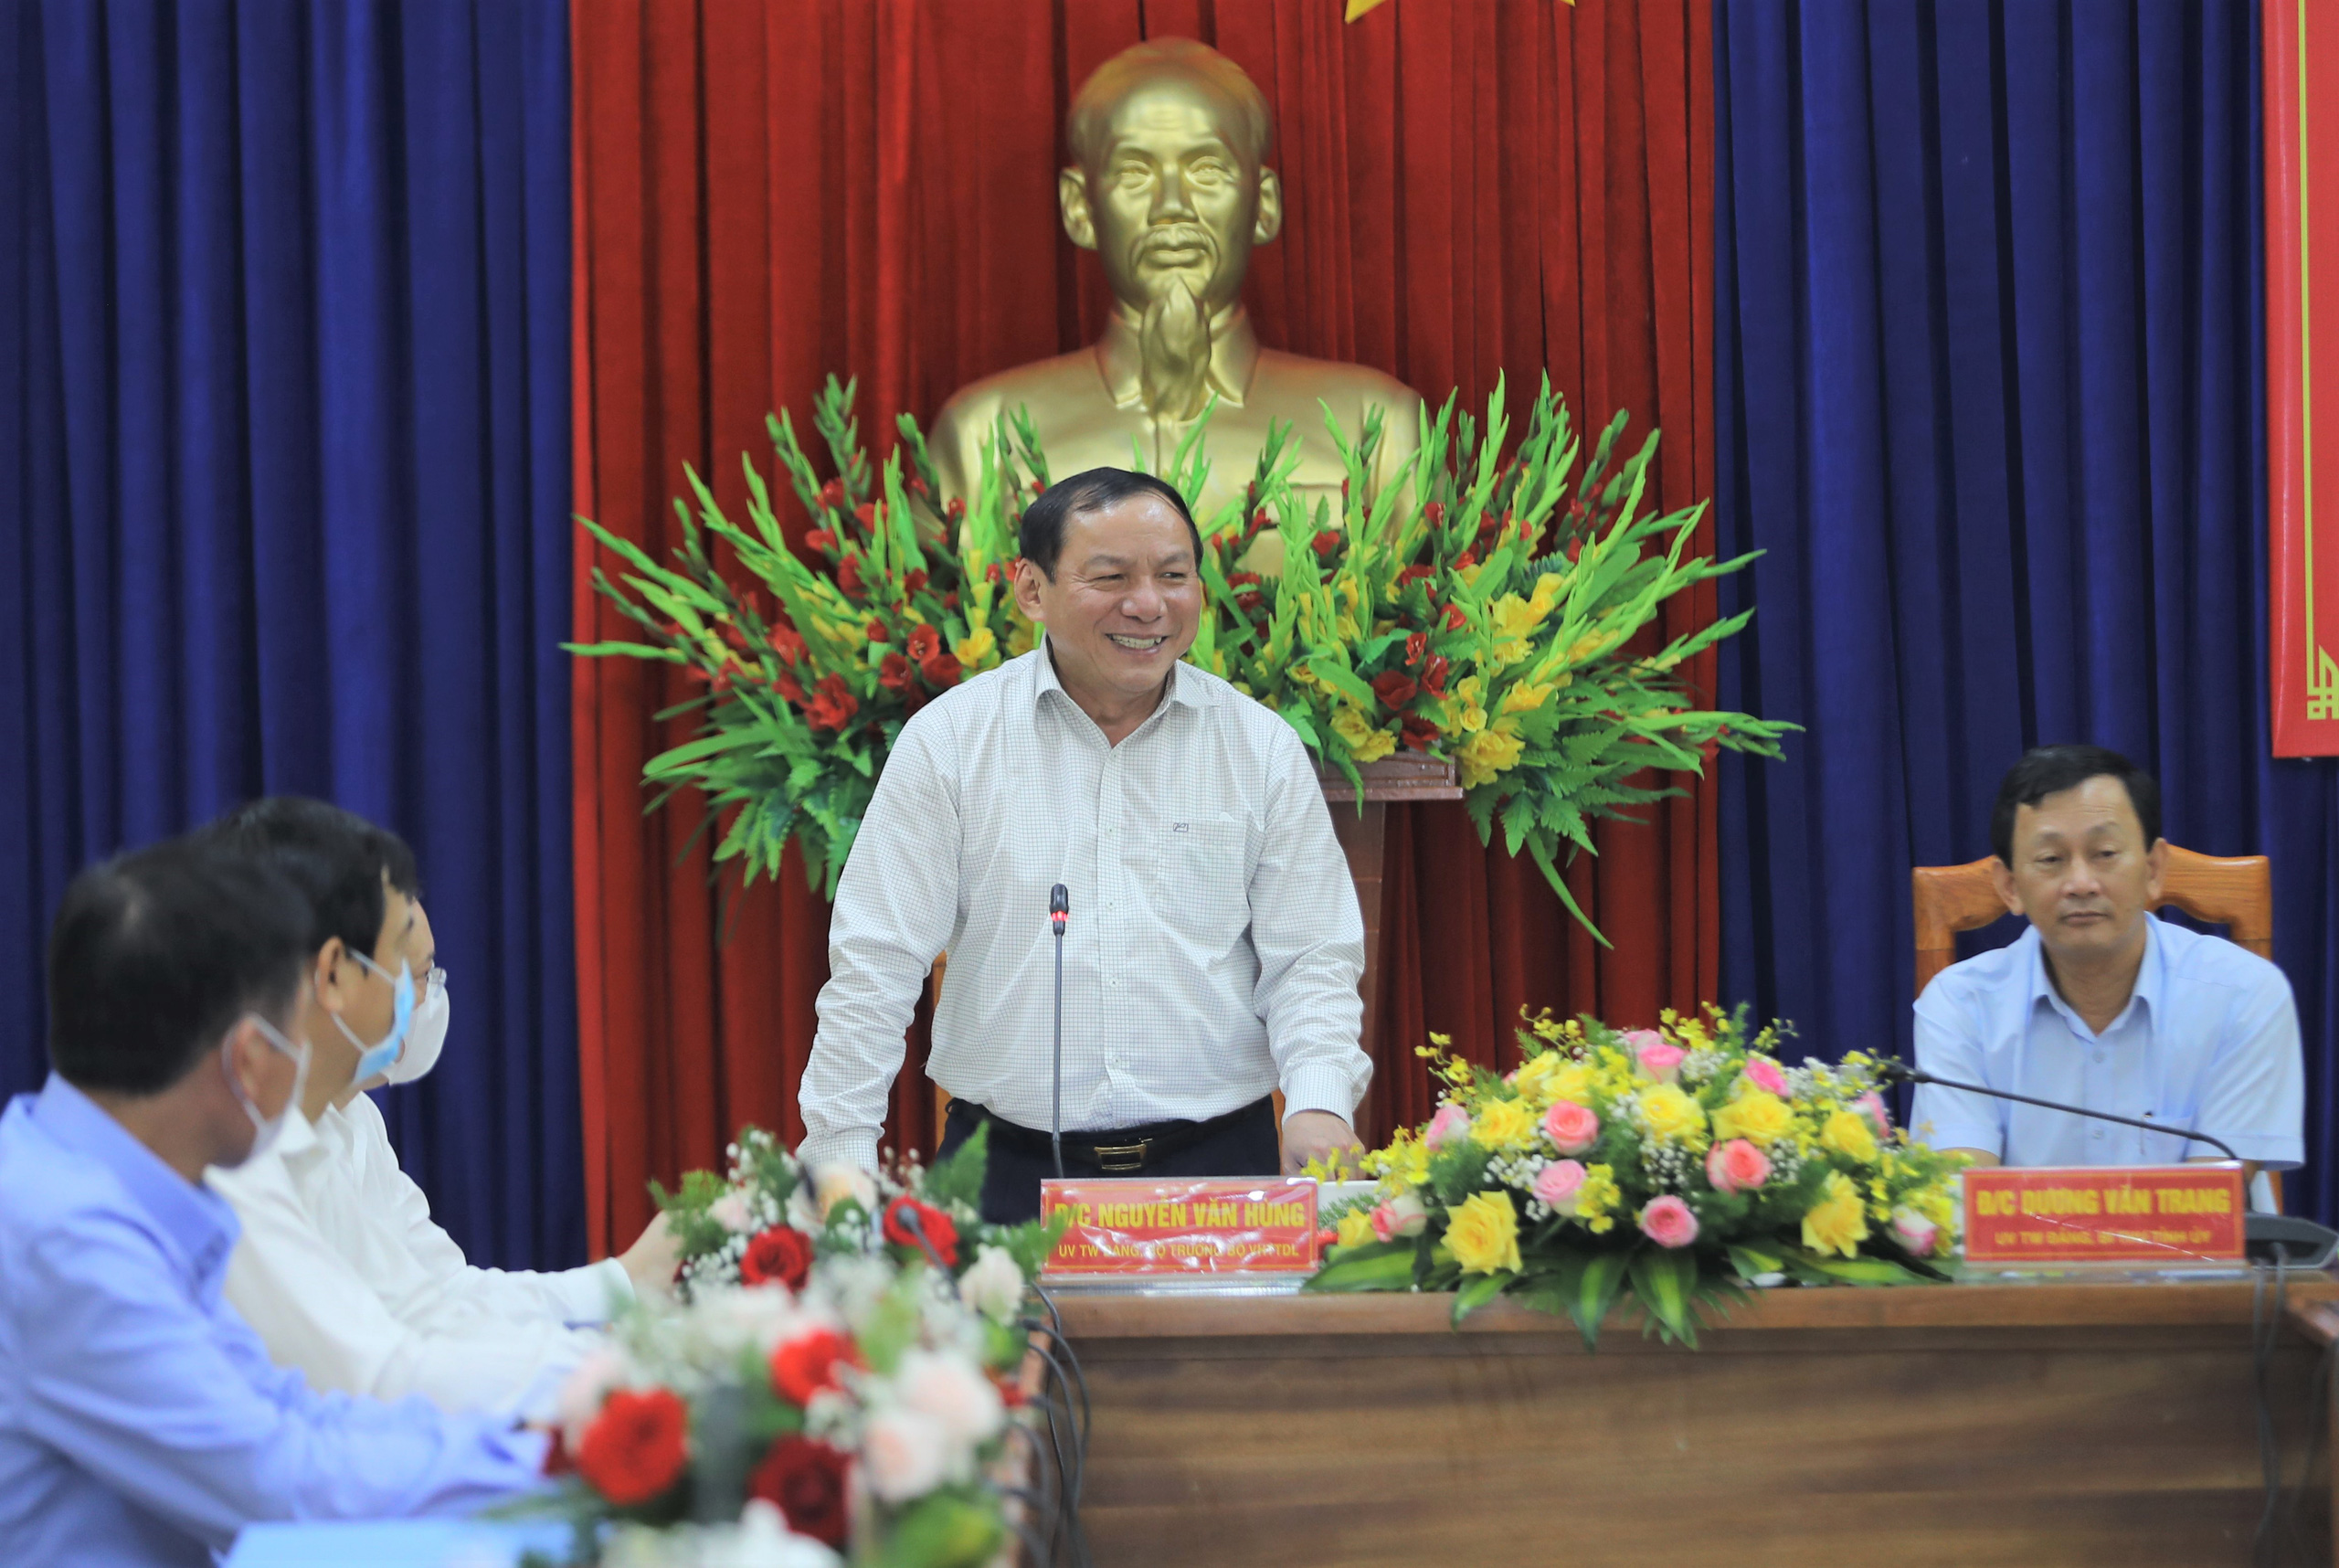 Bộ trưởng Nguyễn Văn Hùng: “Kon Tum có quang cảnh đẹp, sao không mạnh dạn đặt ước mơ trở thành trung tâm hội nghị của khu vực miền Trung-Tây Nguyên” - Ảnh 2.